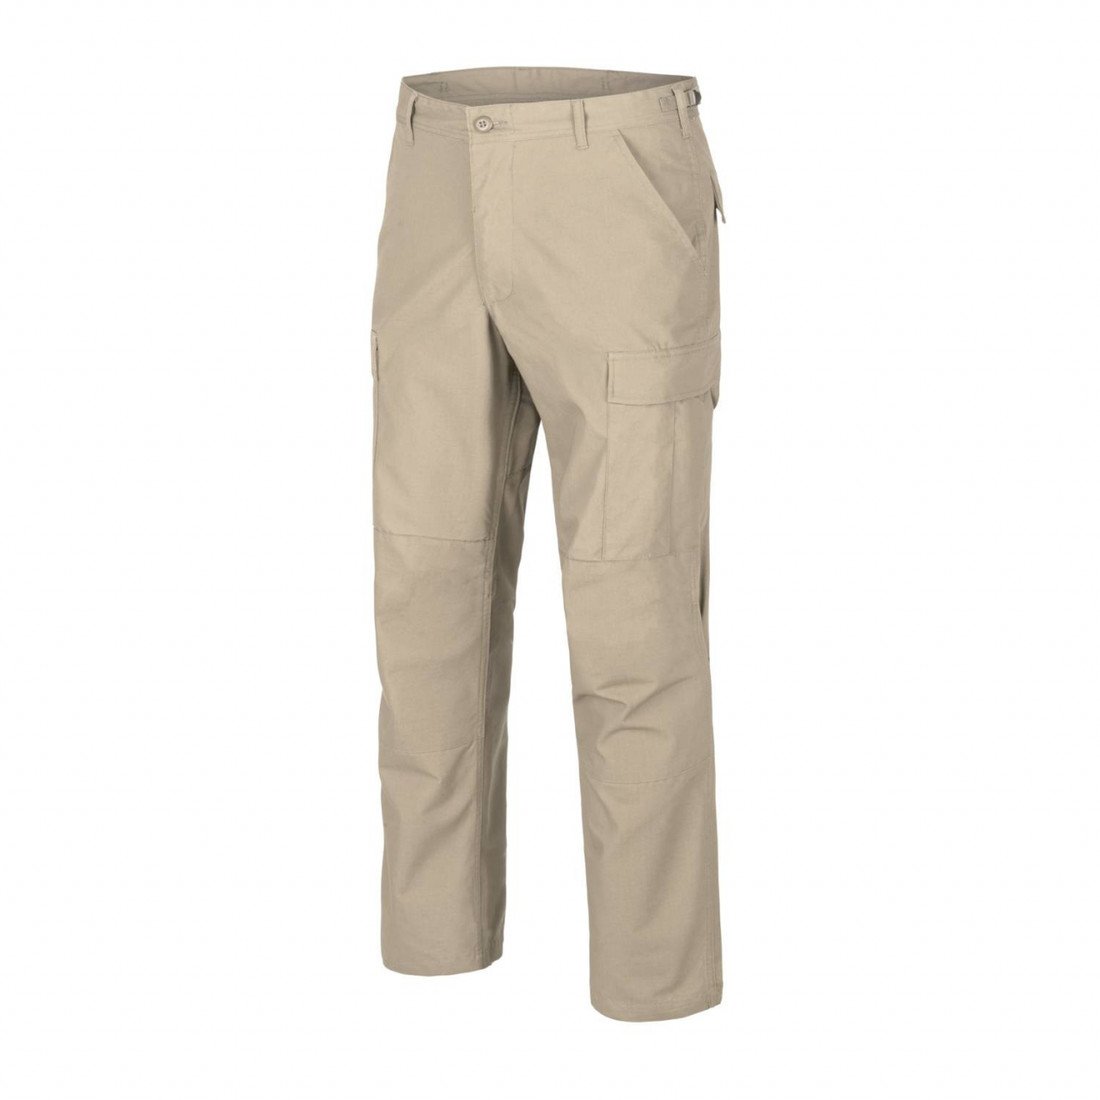 Kalhoty Helikon BDU Pants Ripstop - béžové, XS